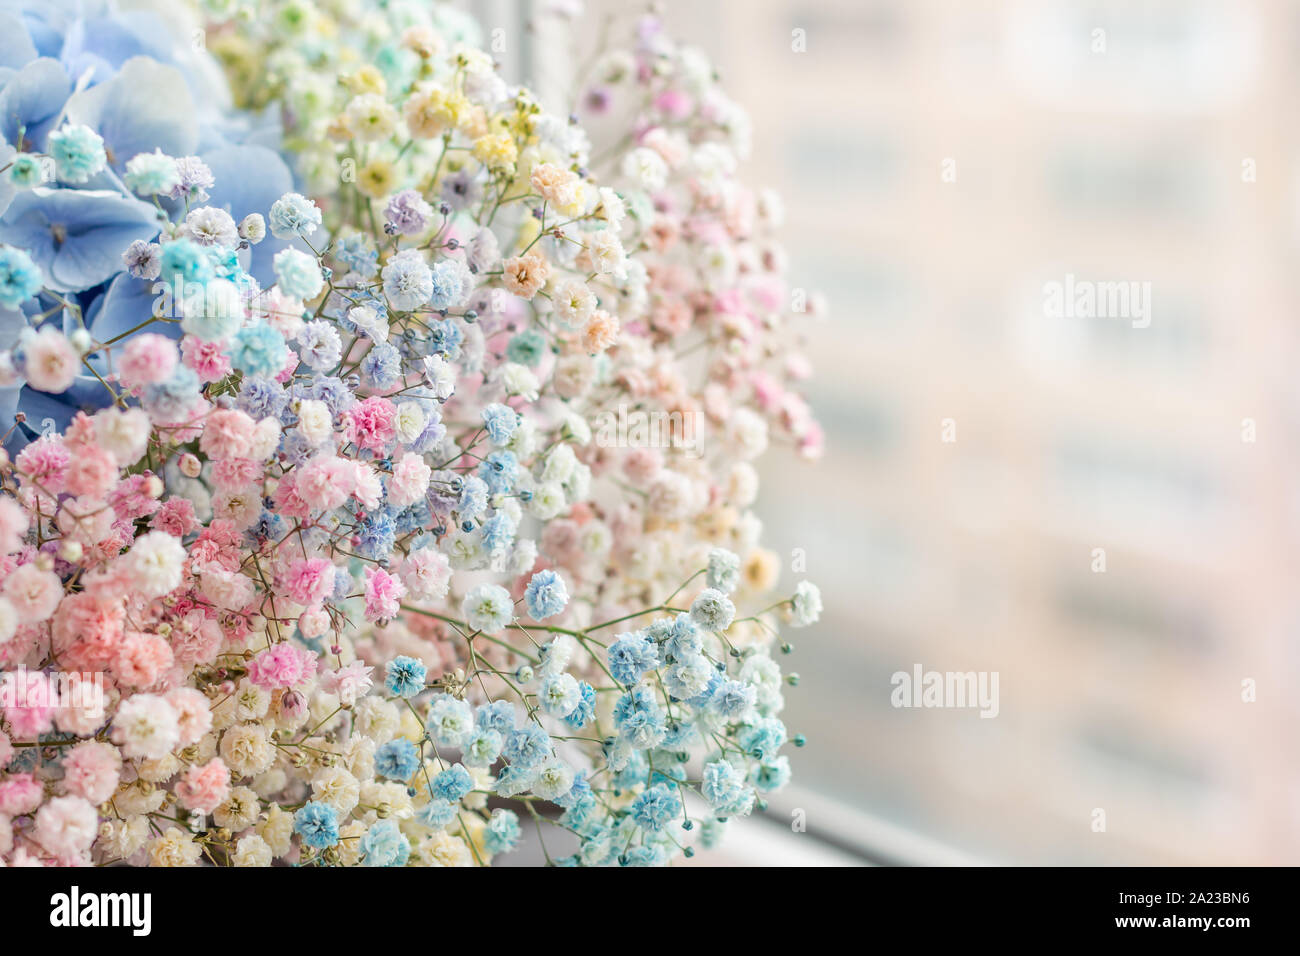 Eine schöne Reihe von bunten kleinen Blüten sitzen an einem Fenster Stockfoto